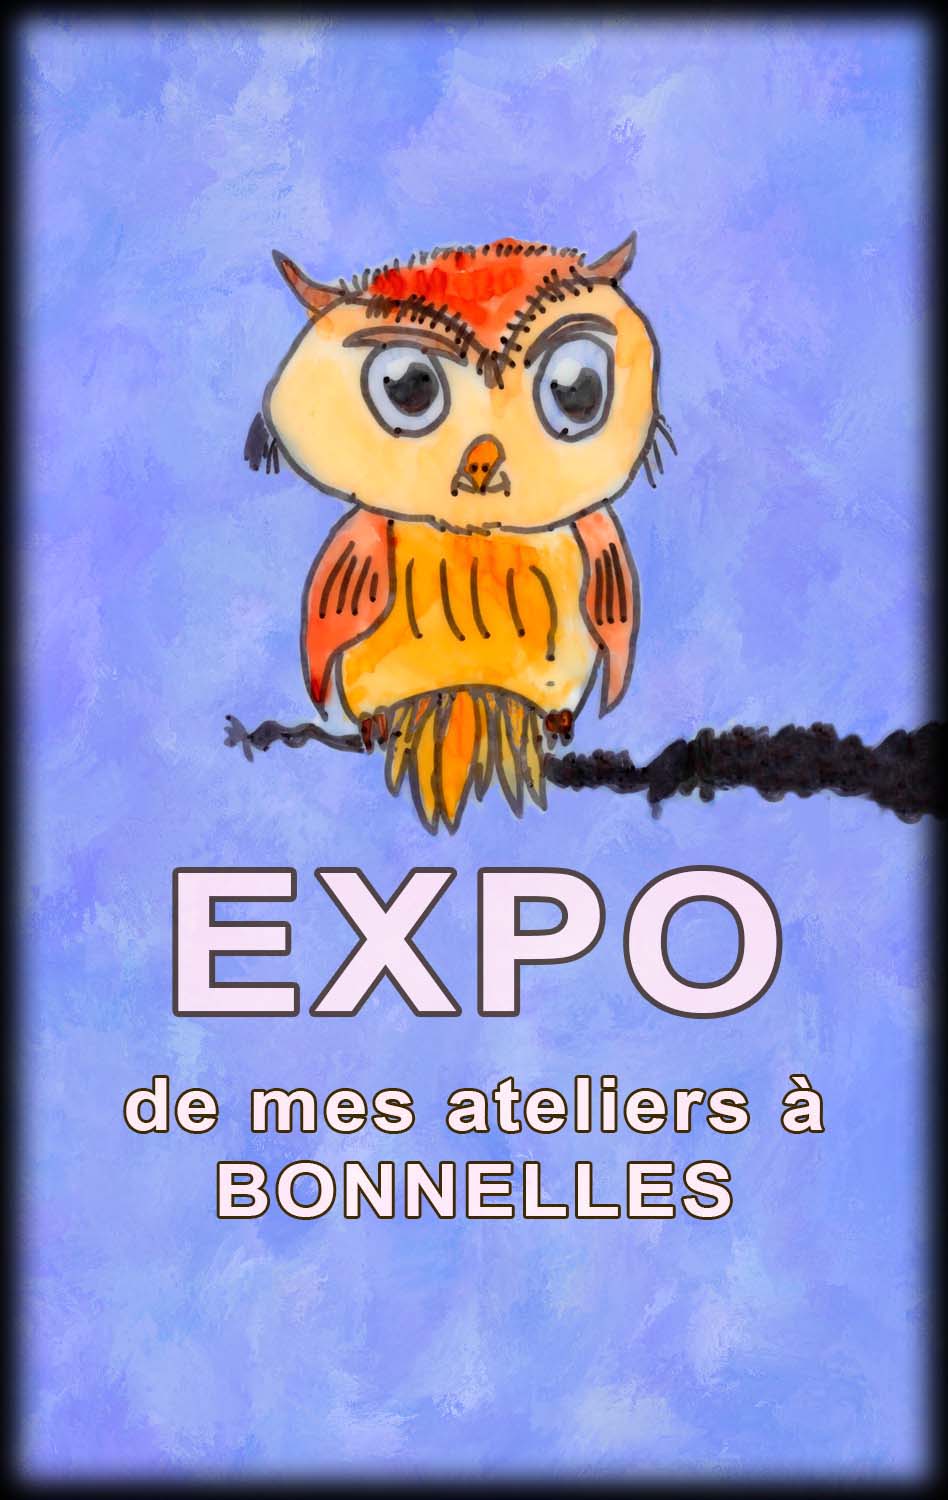 Expo ateliers Bonnelles 2020